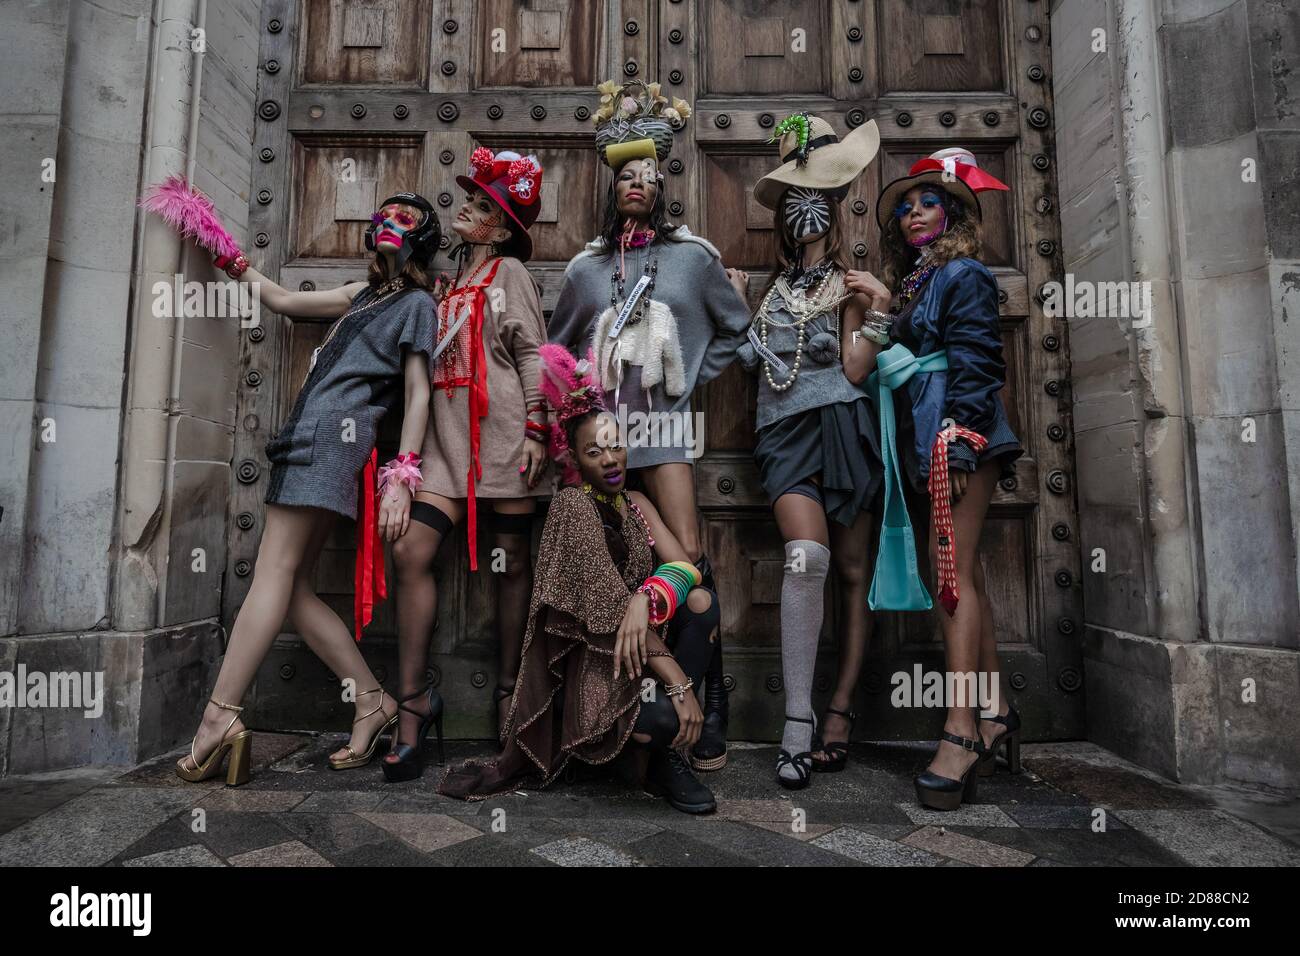 Les modèles prennent part à un défilé de mode de rue coloré près de Savile Row pour le designer Pierre Garroudi. Londres, Royaume-Uni. Banque D'Images